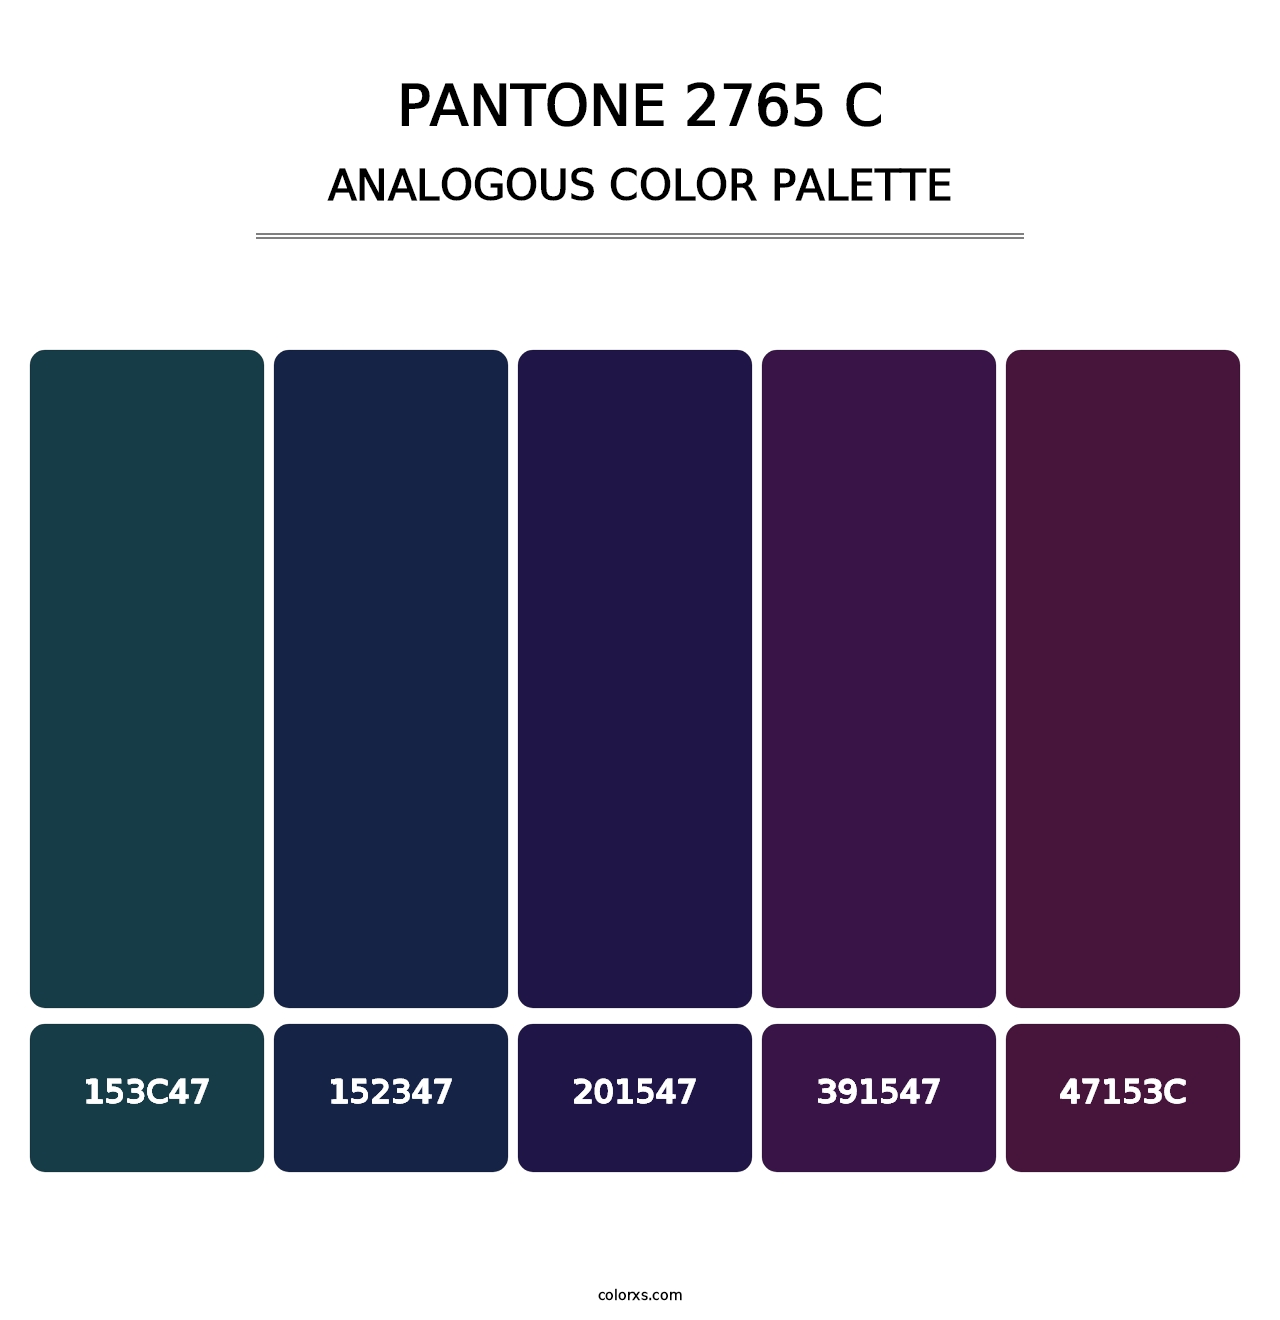 PANTONE 2765 C - Analogous Color Palette